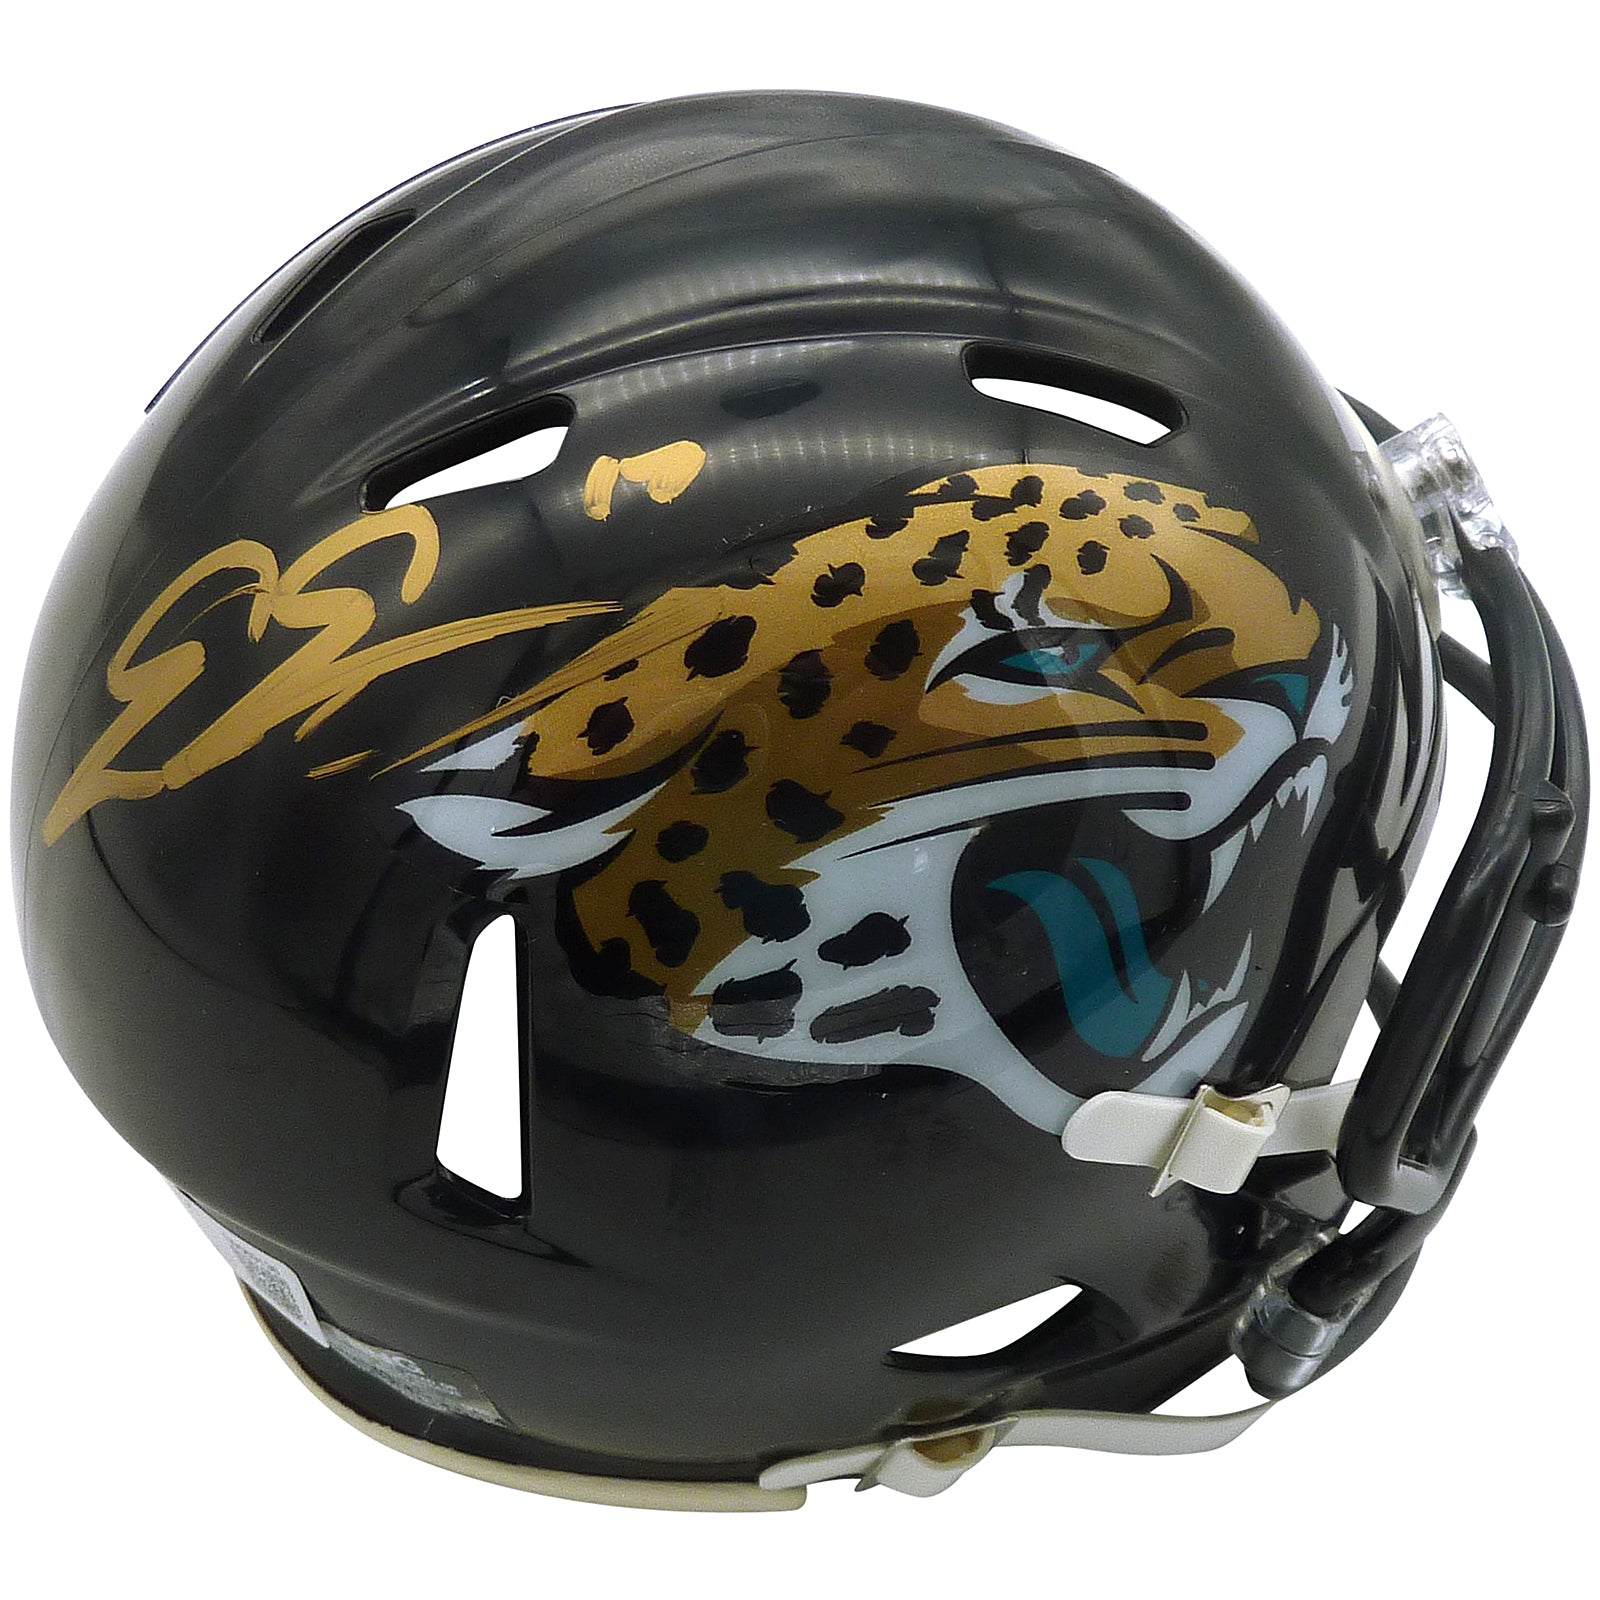 Evan Engram Autographed Jacksonville Jaguars Mini Helmet - Beckett